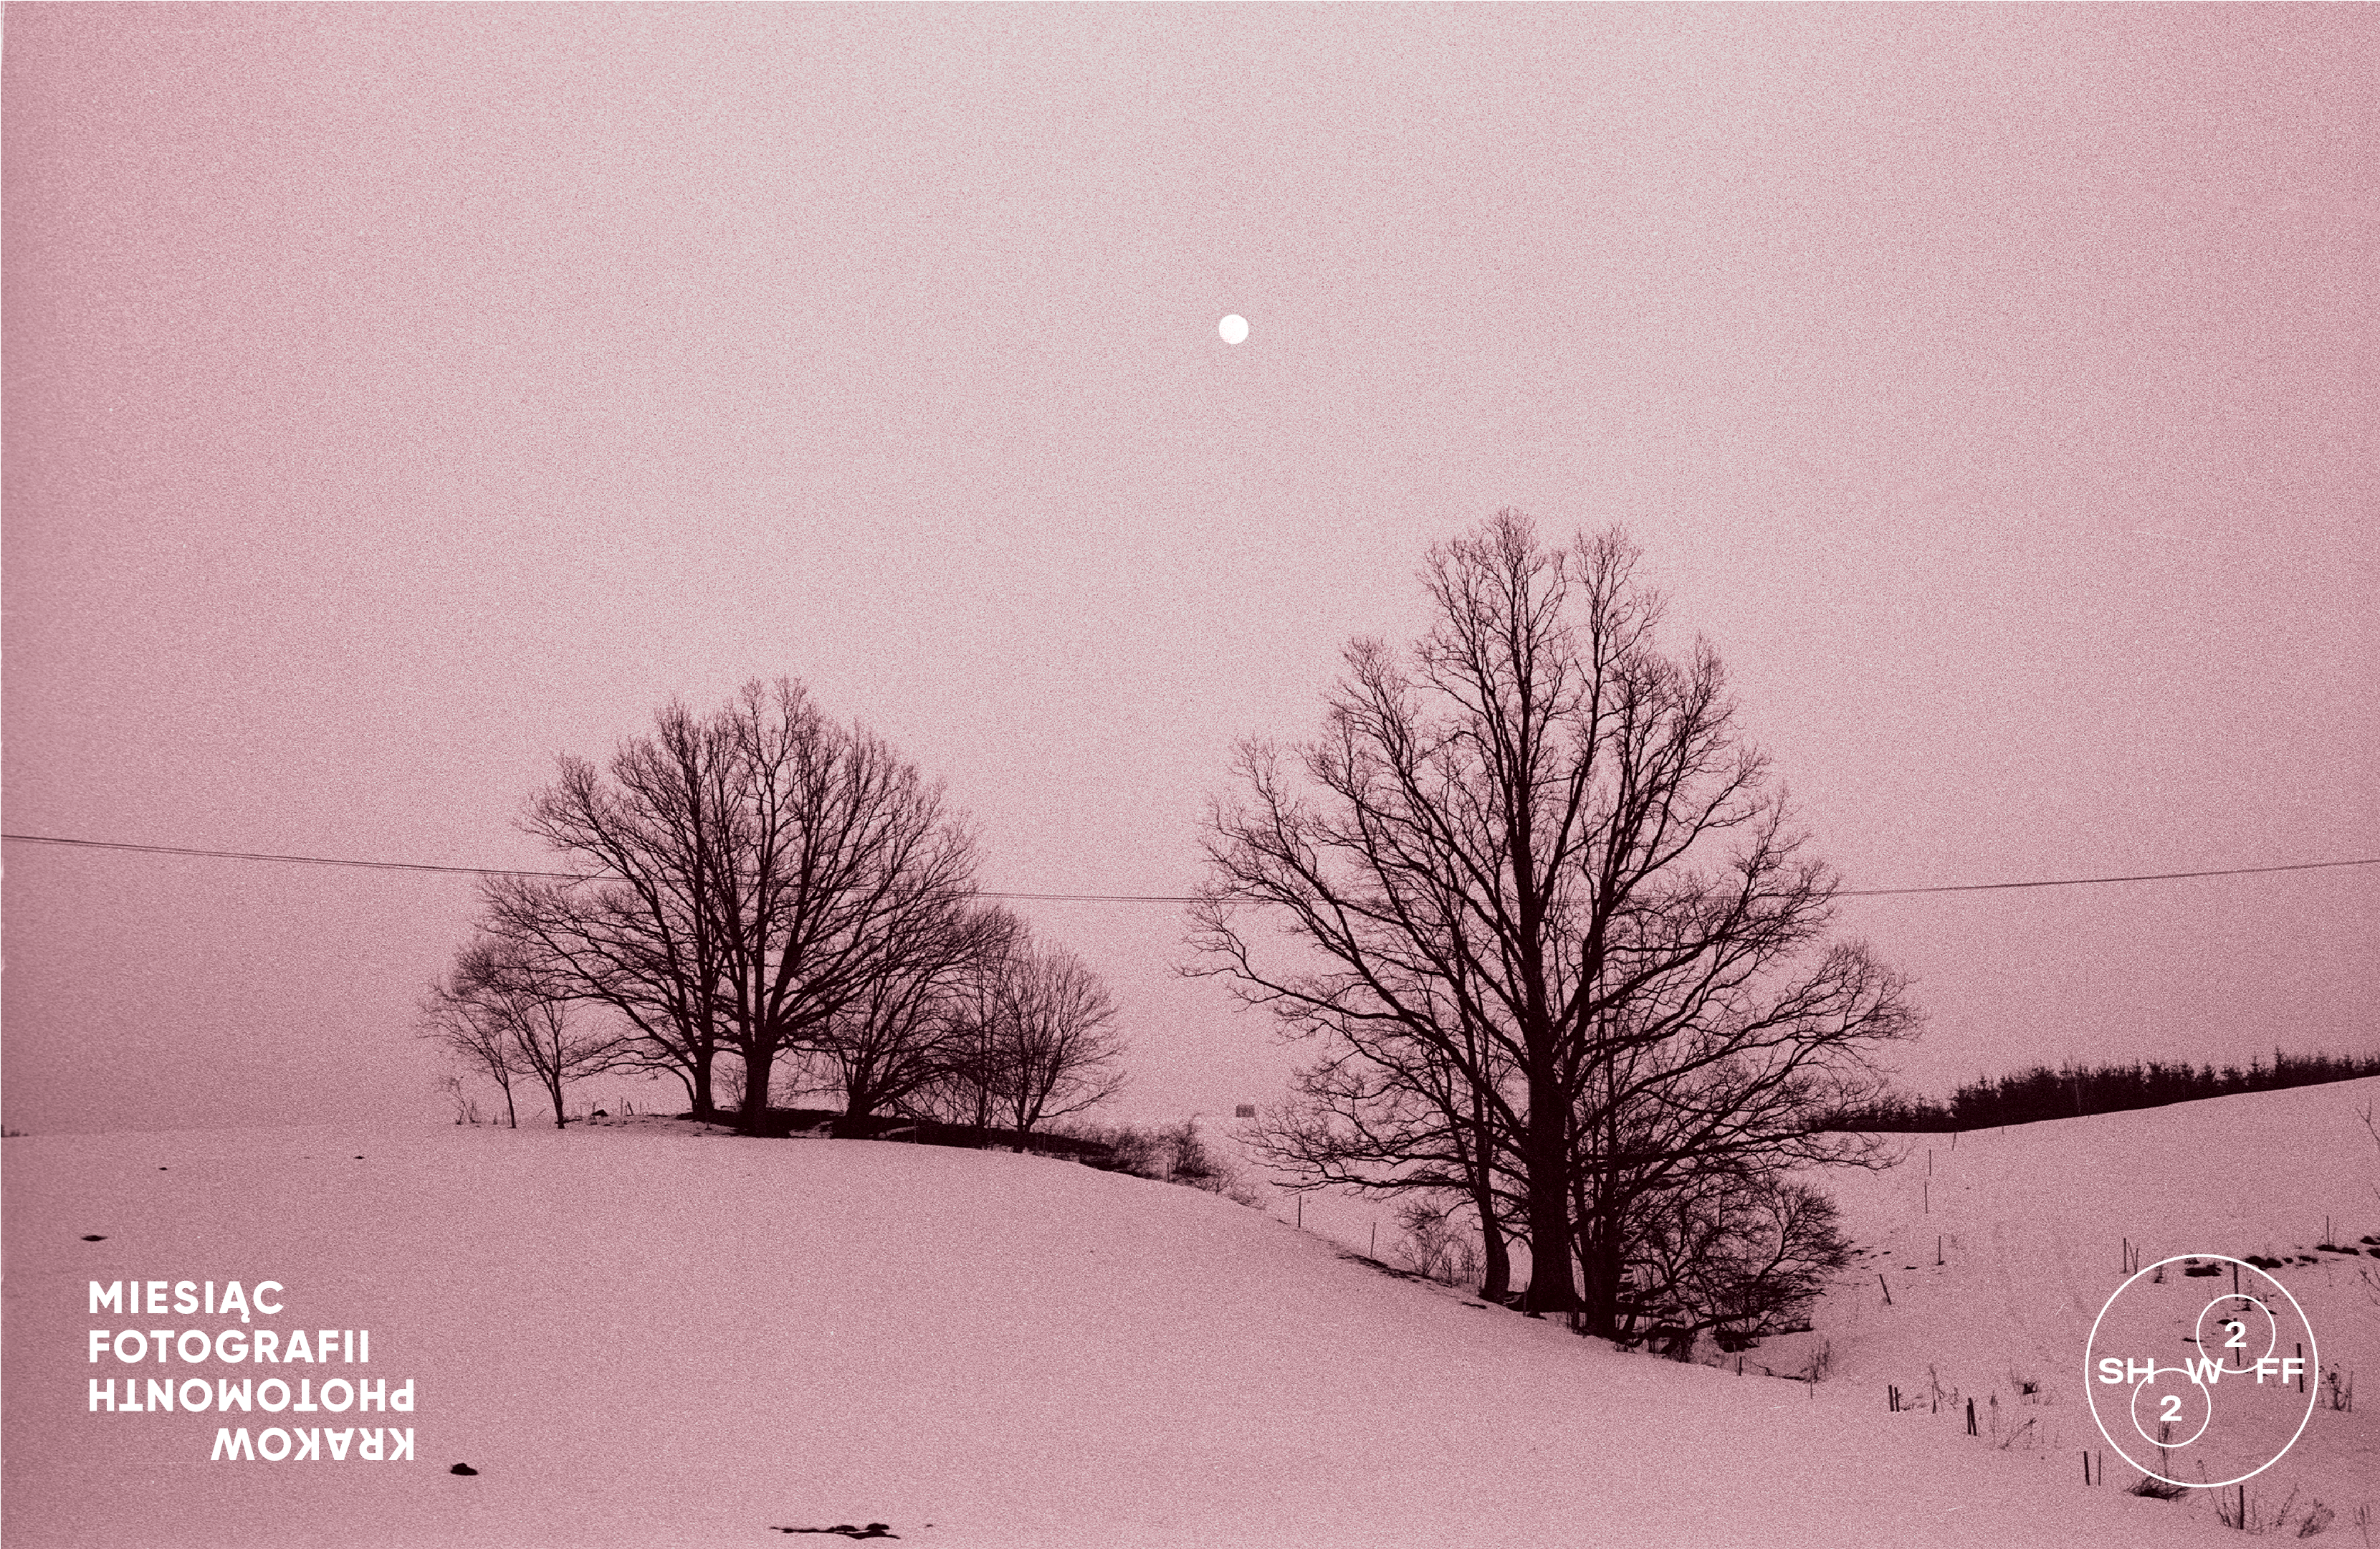 Polana w zimie. Wszystko pokryte śniegiem. Dwa drzewa pozbawione liści. Zdjęcie w odcieniach różowych. W prawym dolnym rogu biały napis: miesiąc fotografii.